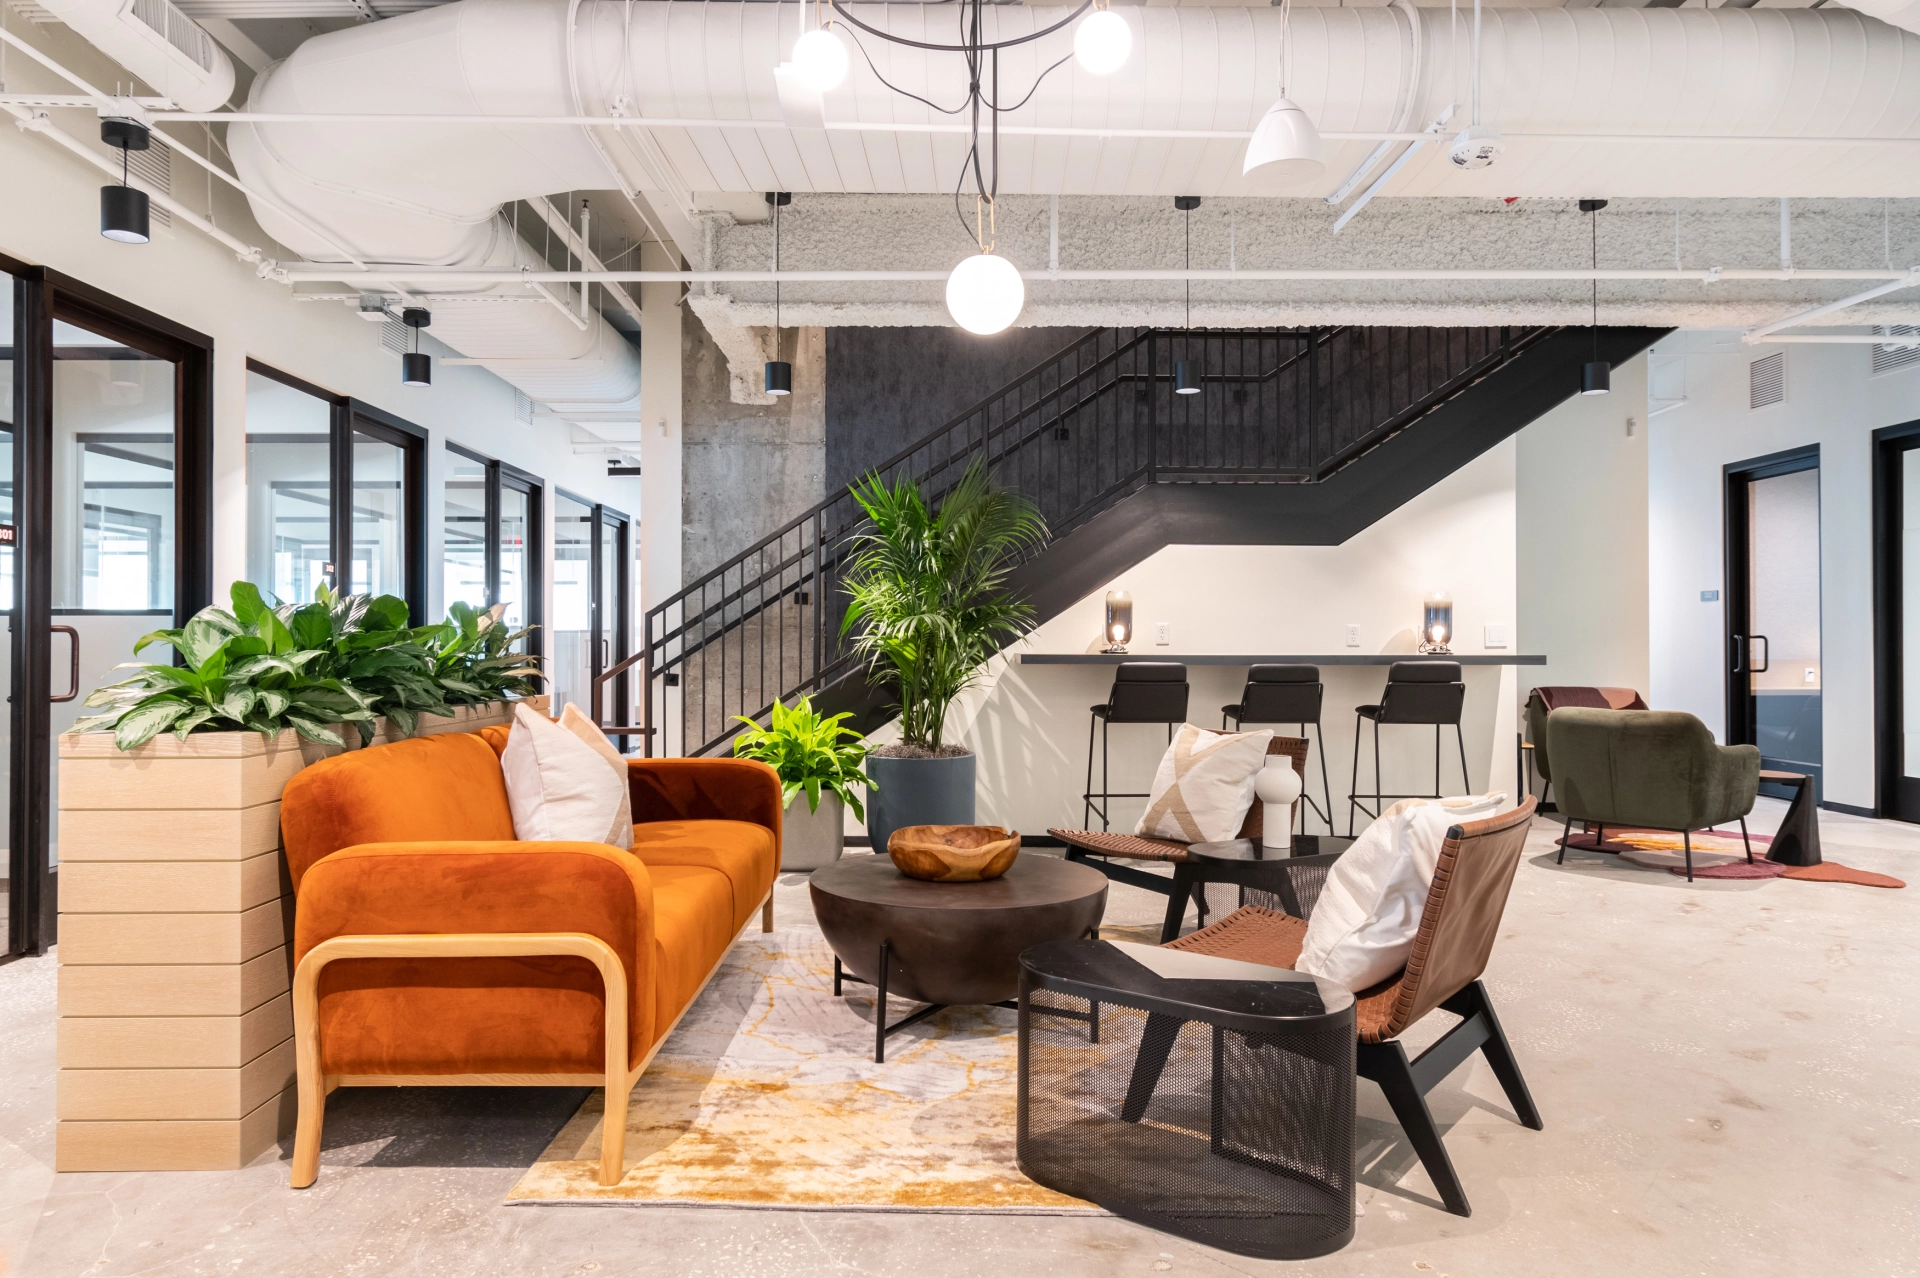 Un espace de coworking à Saint-Pétersbourg avec un bureau moderne au mobilier orange et un escalier, équipé de salles de réunion.